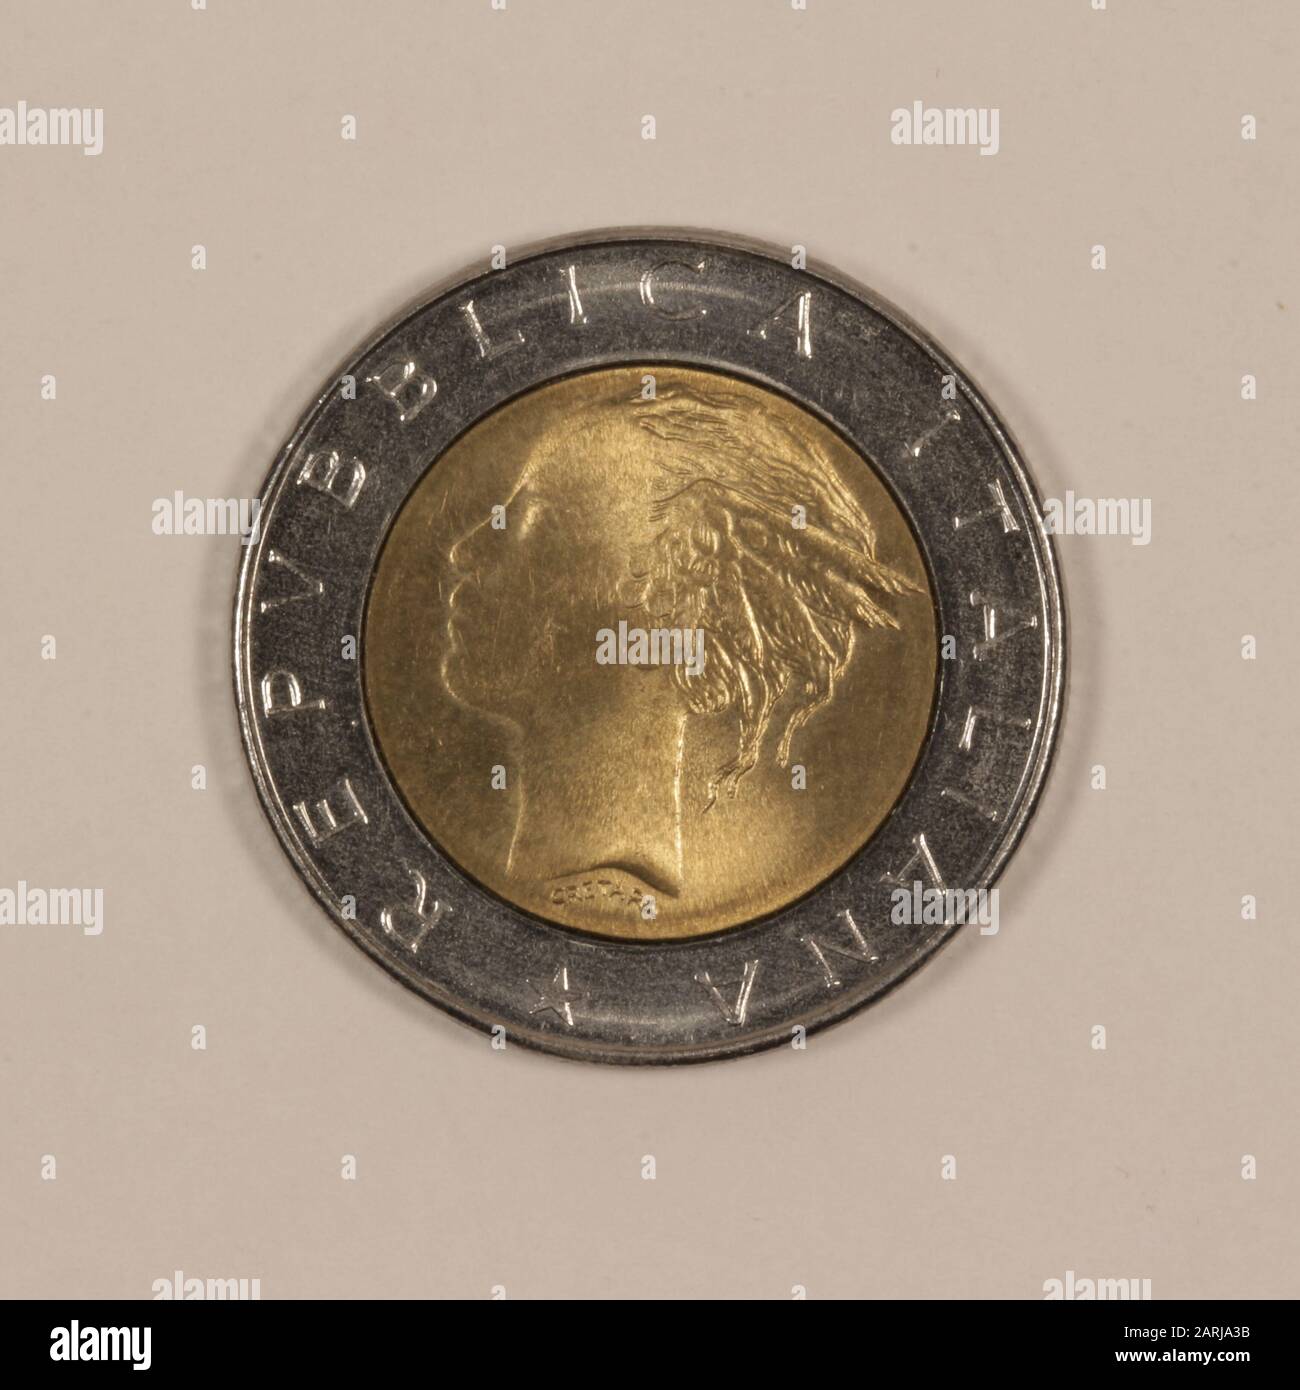 Rückseite einer ehemaligen Italienischen 500 Lire Münze Stock Photo